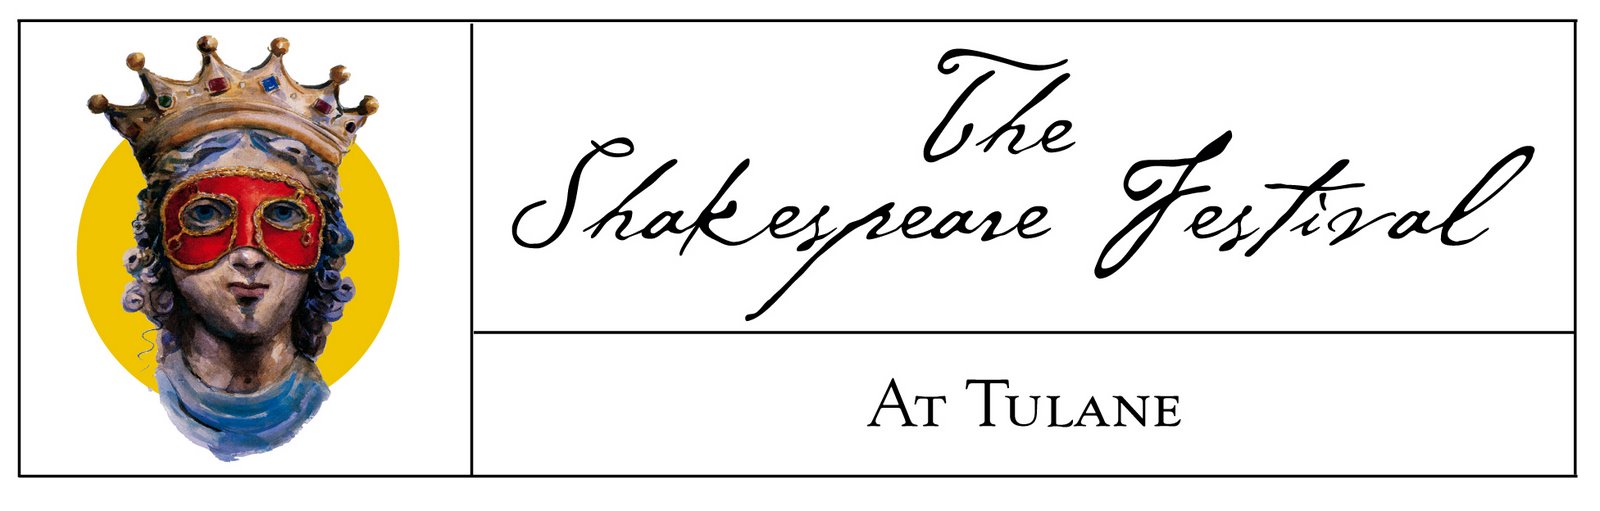 [The+Shakespeare+Festival+at+Tulane+University+New+Orleans.jpg]